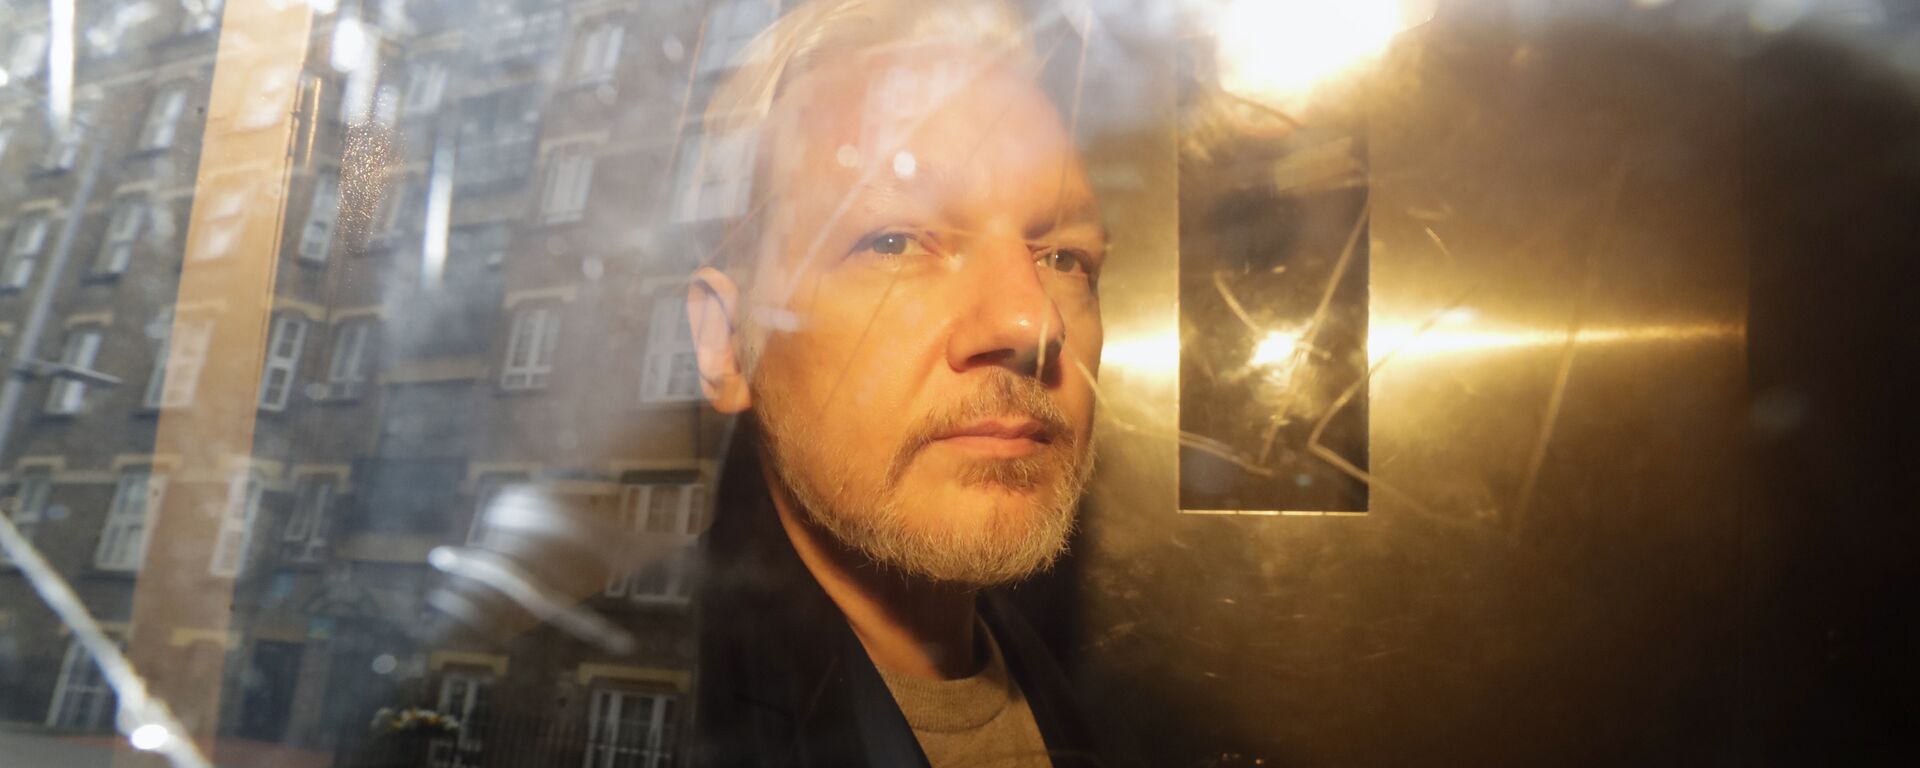 Julian Assange, fundador de WikiLeaks - Sputnik Mundo, 1920, 12.11.2021